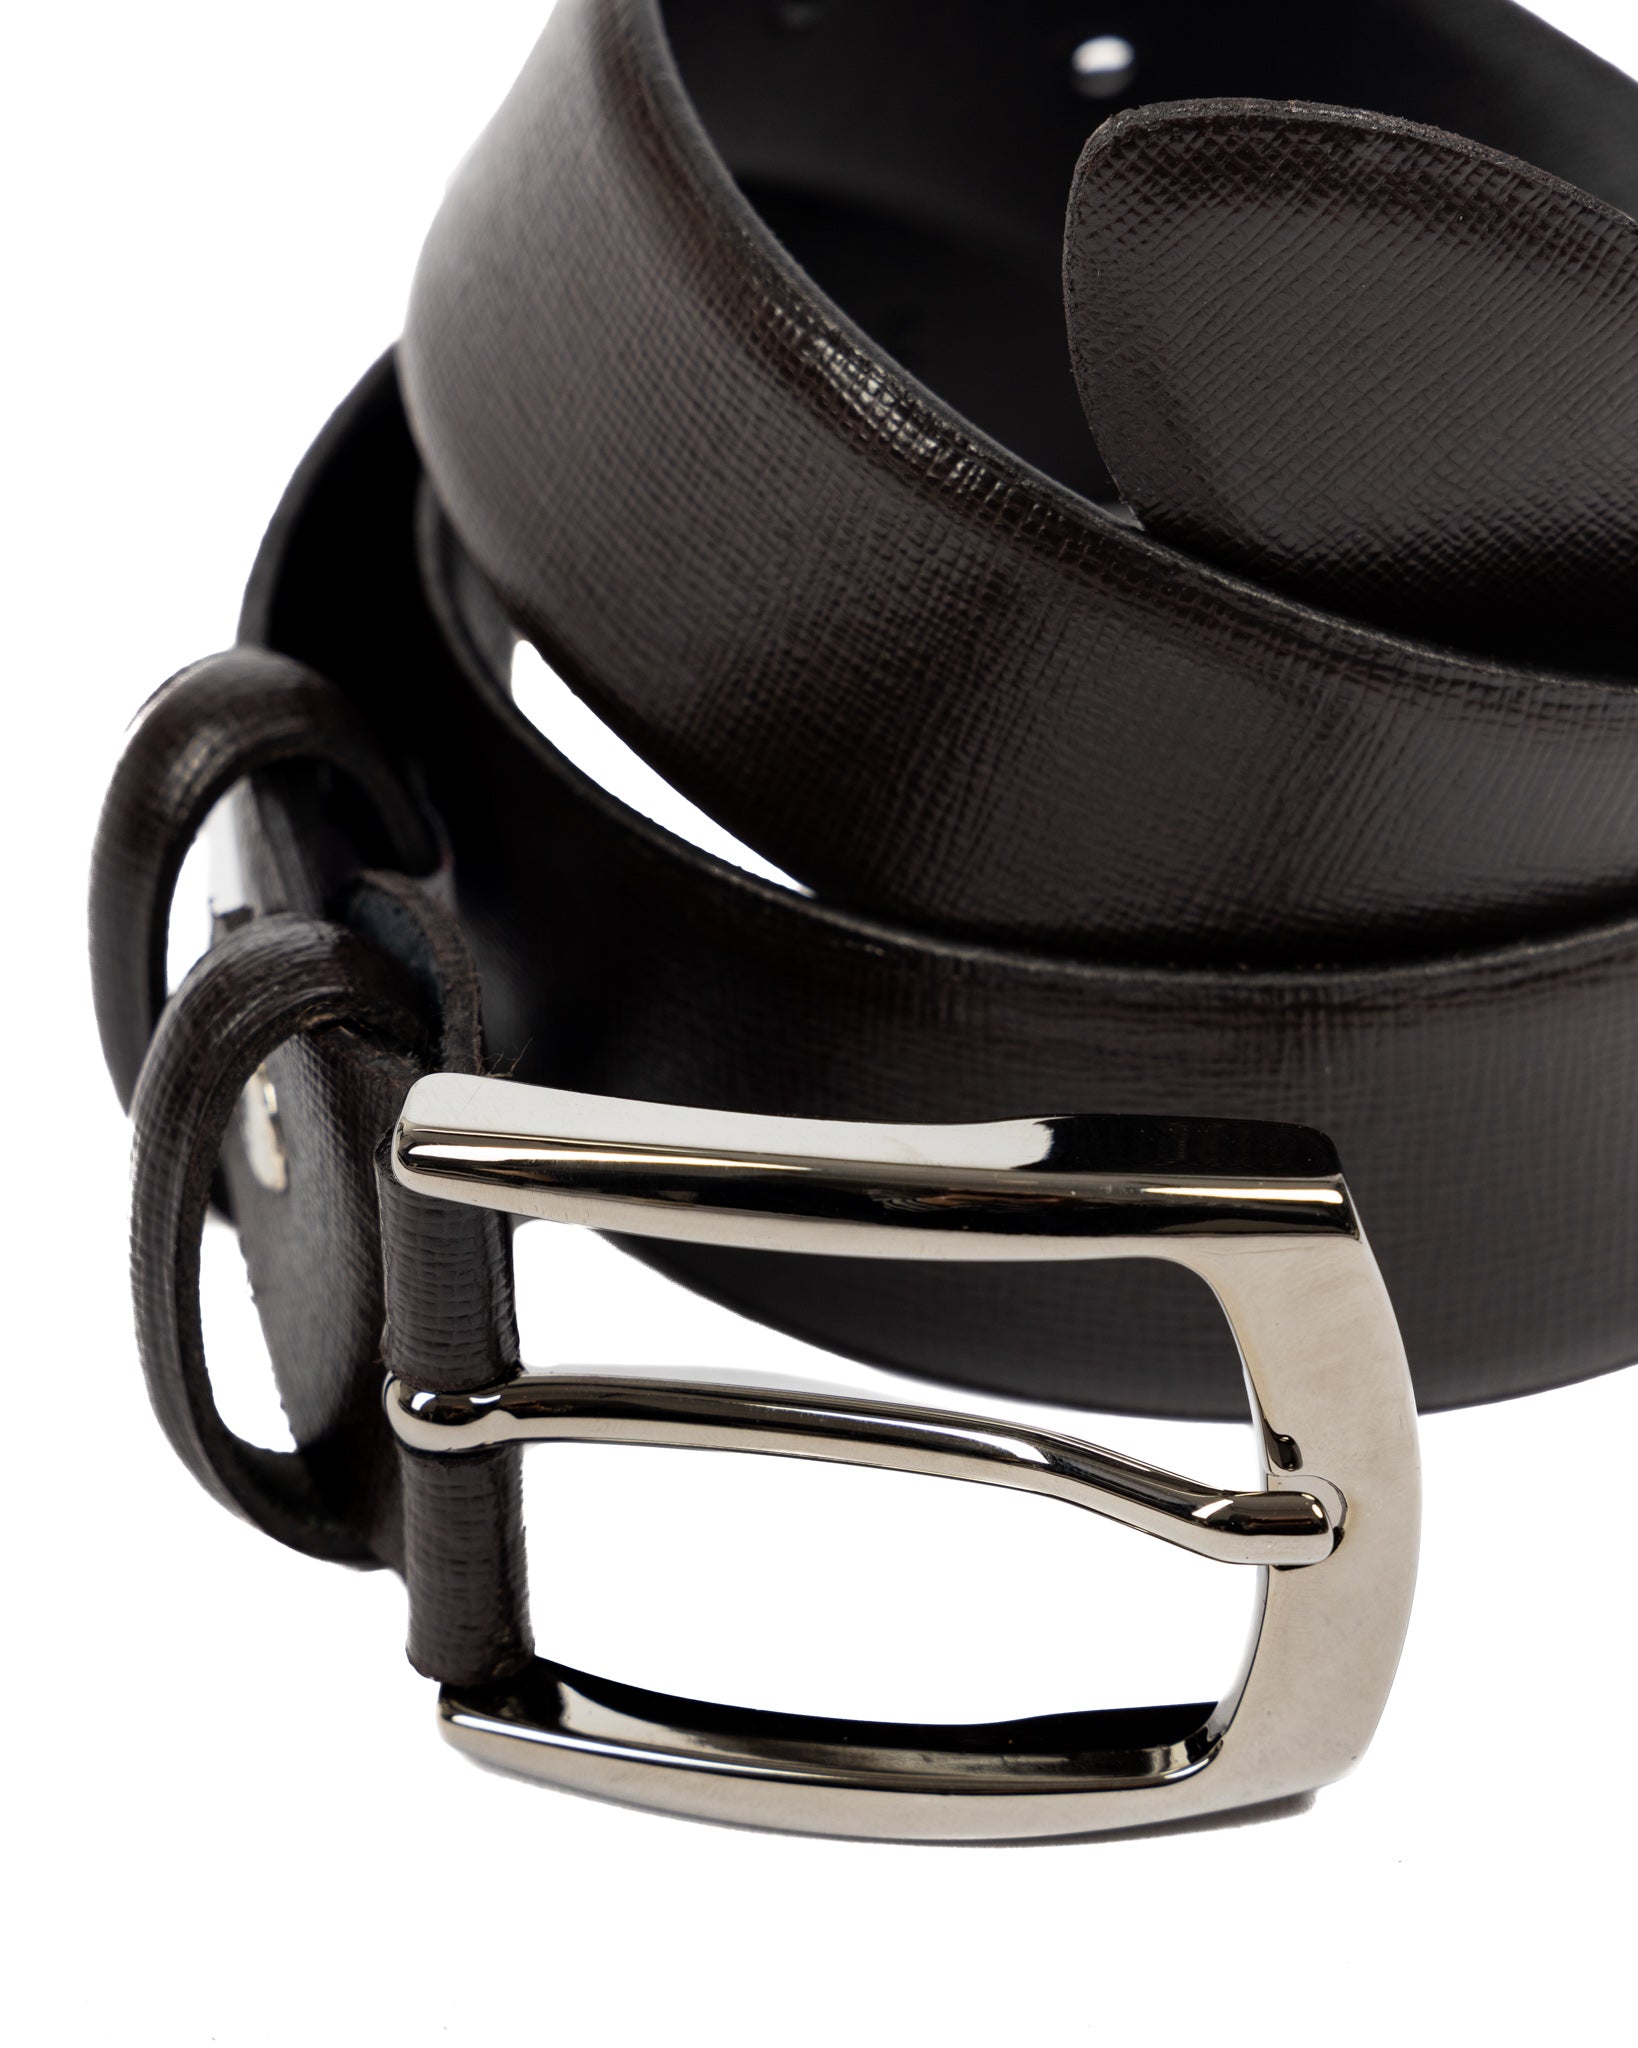 Capalbio - dark brown saffiano leather belt